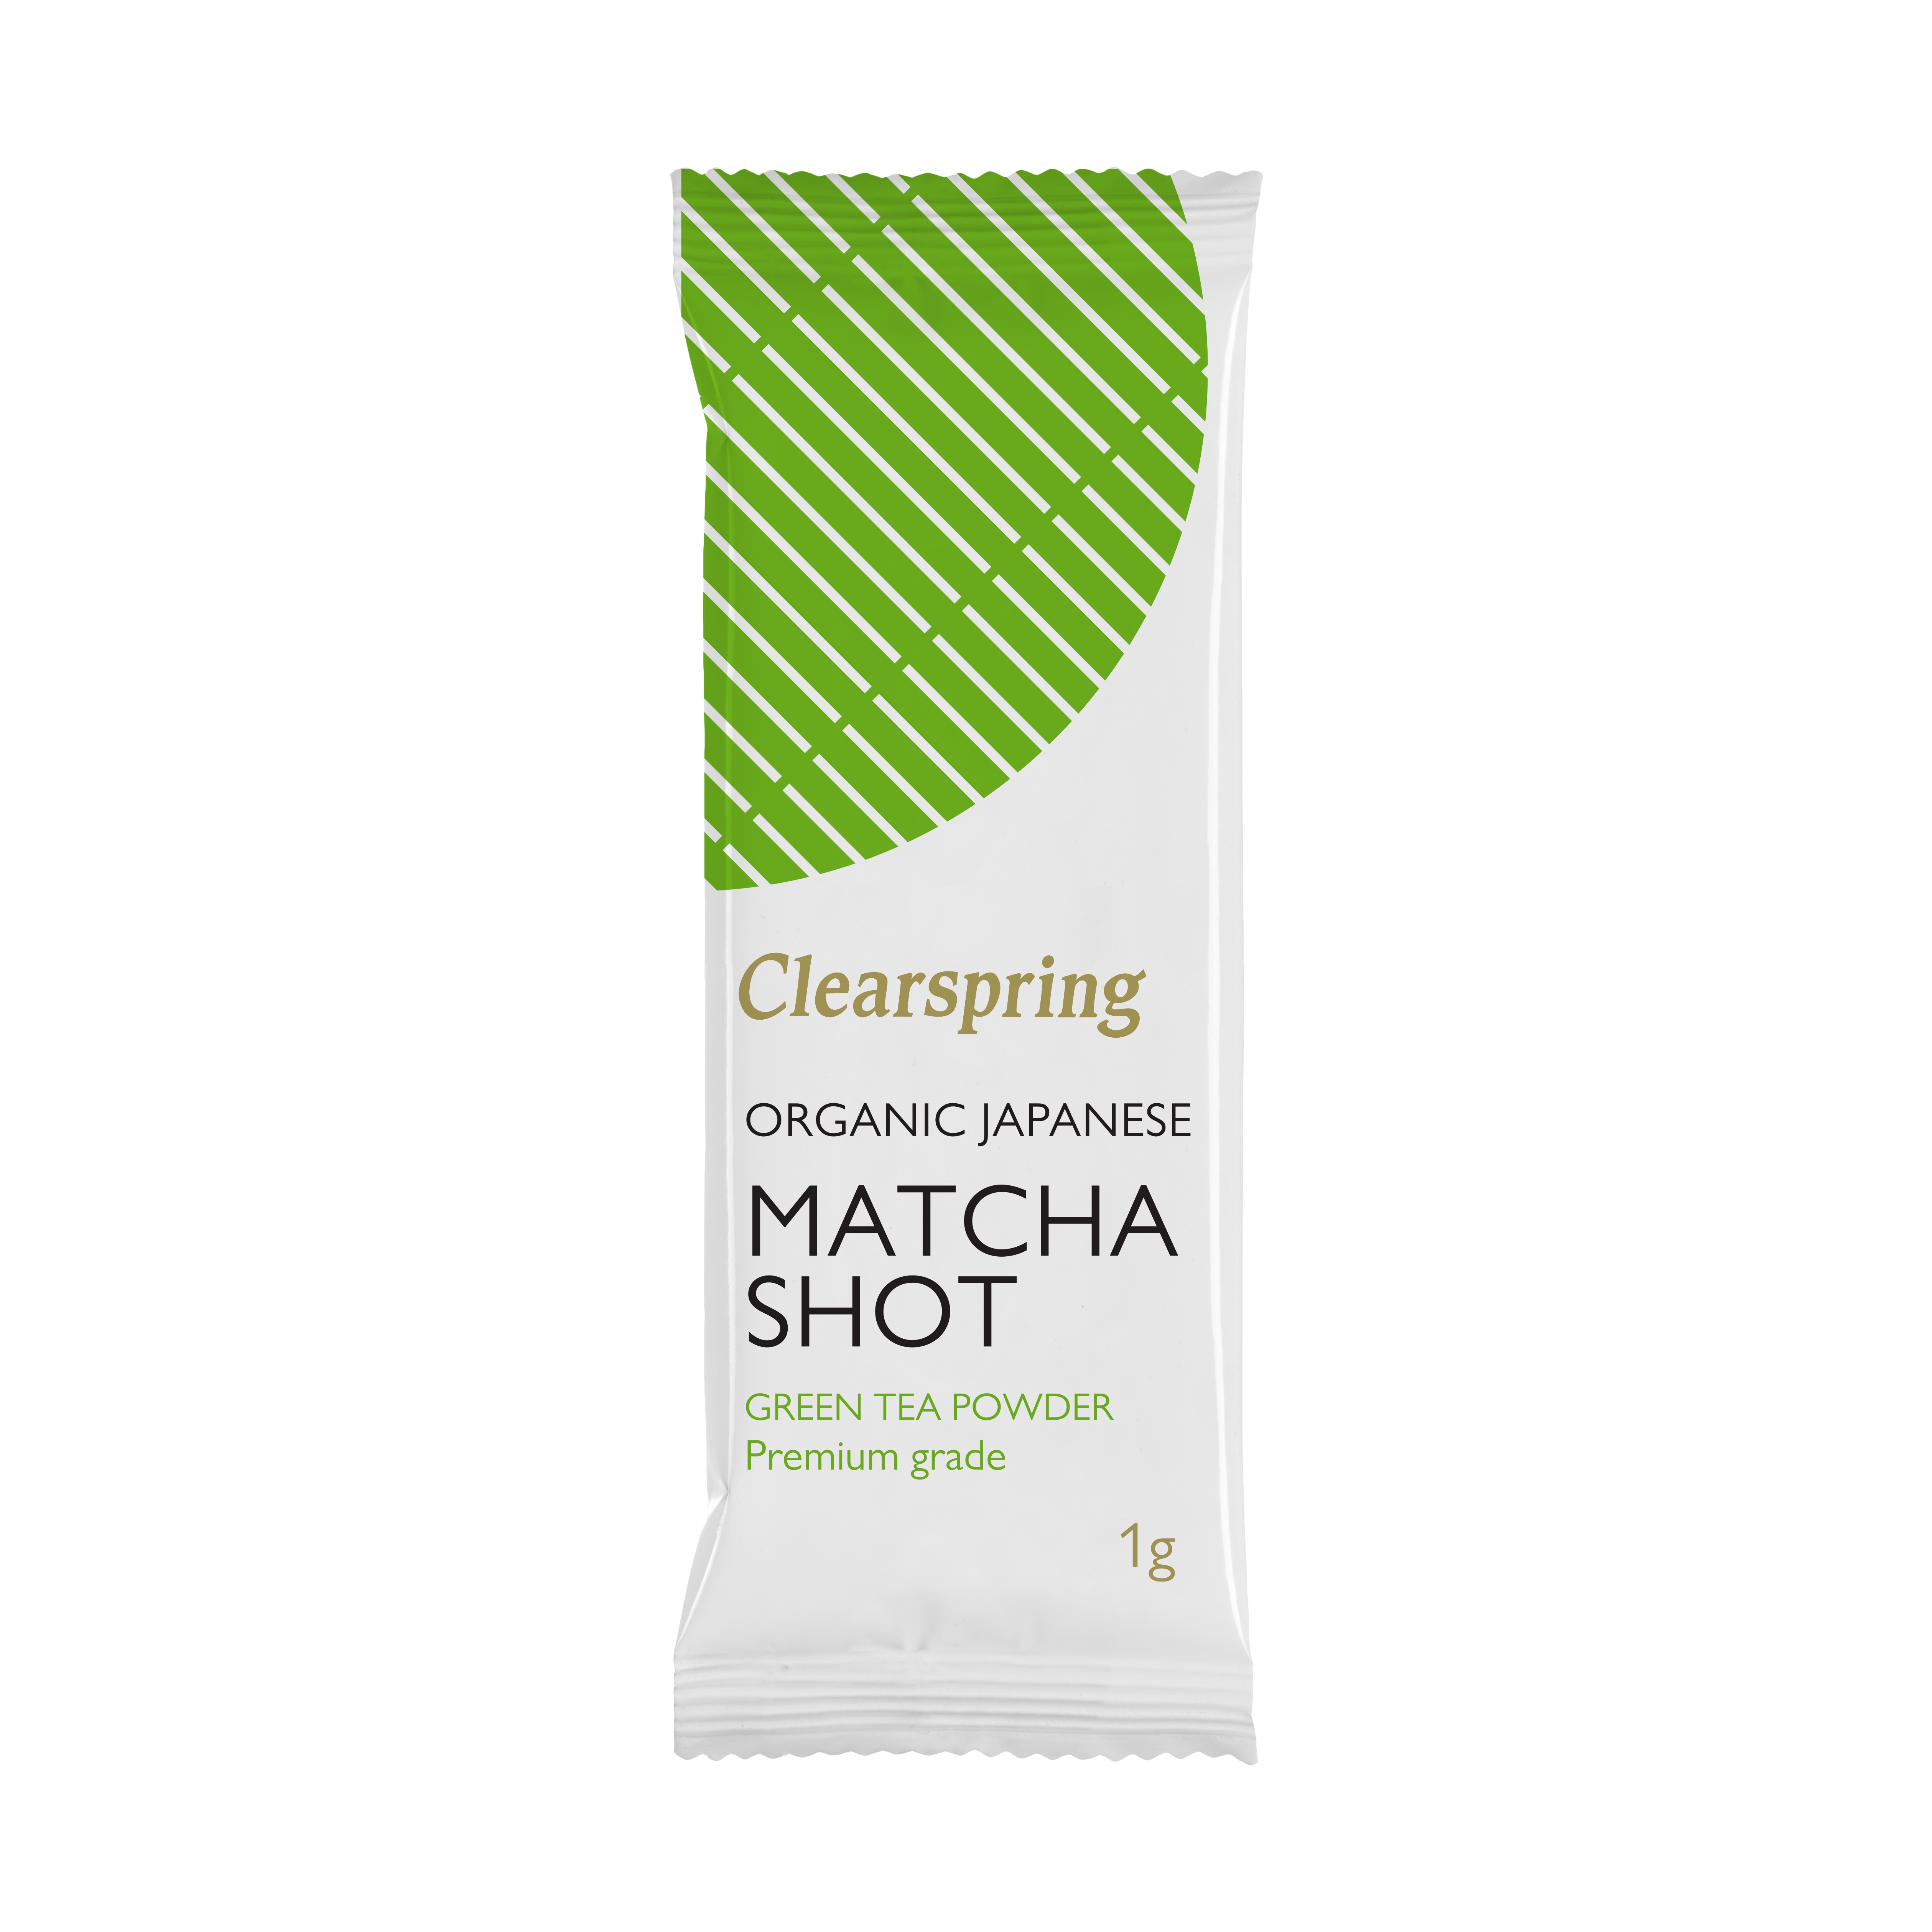 Matcha práškový čaj – Clearspring, bio 1g